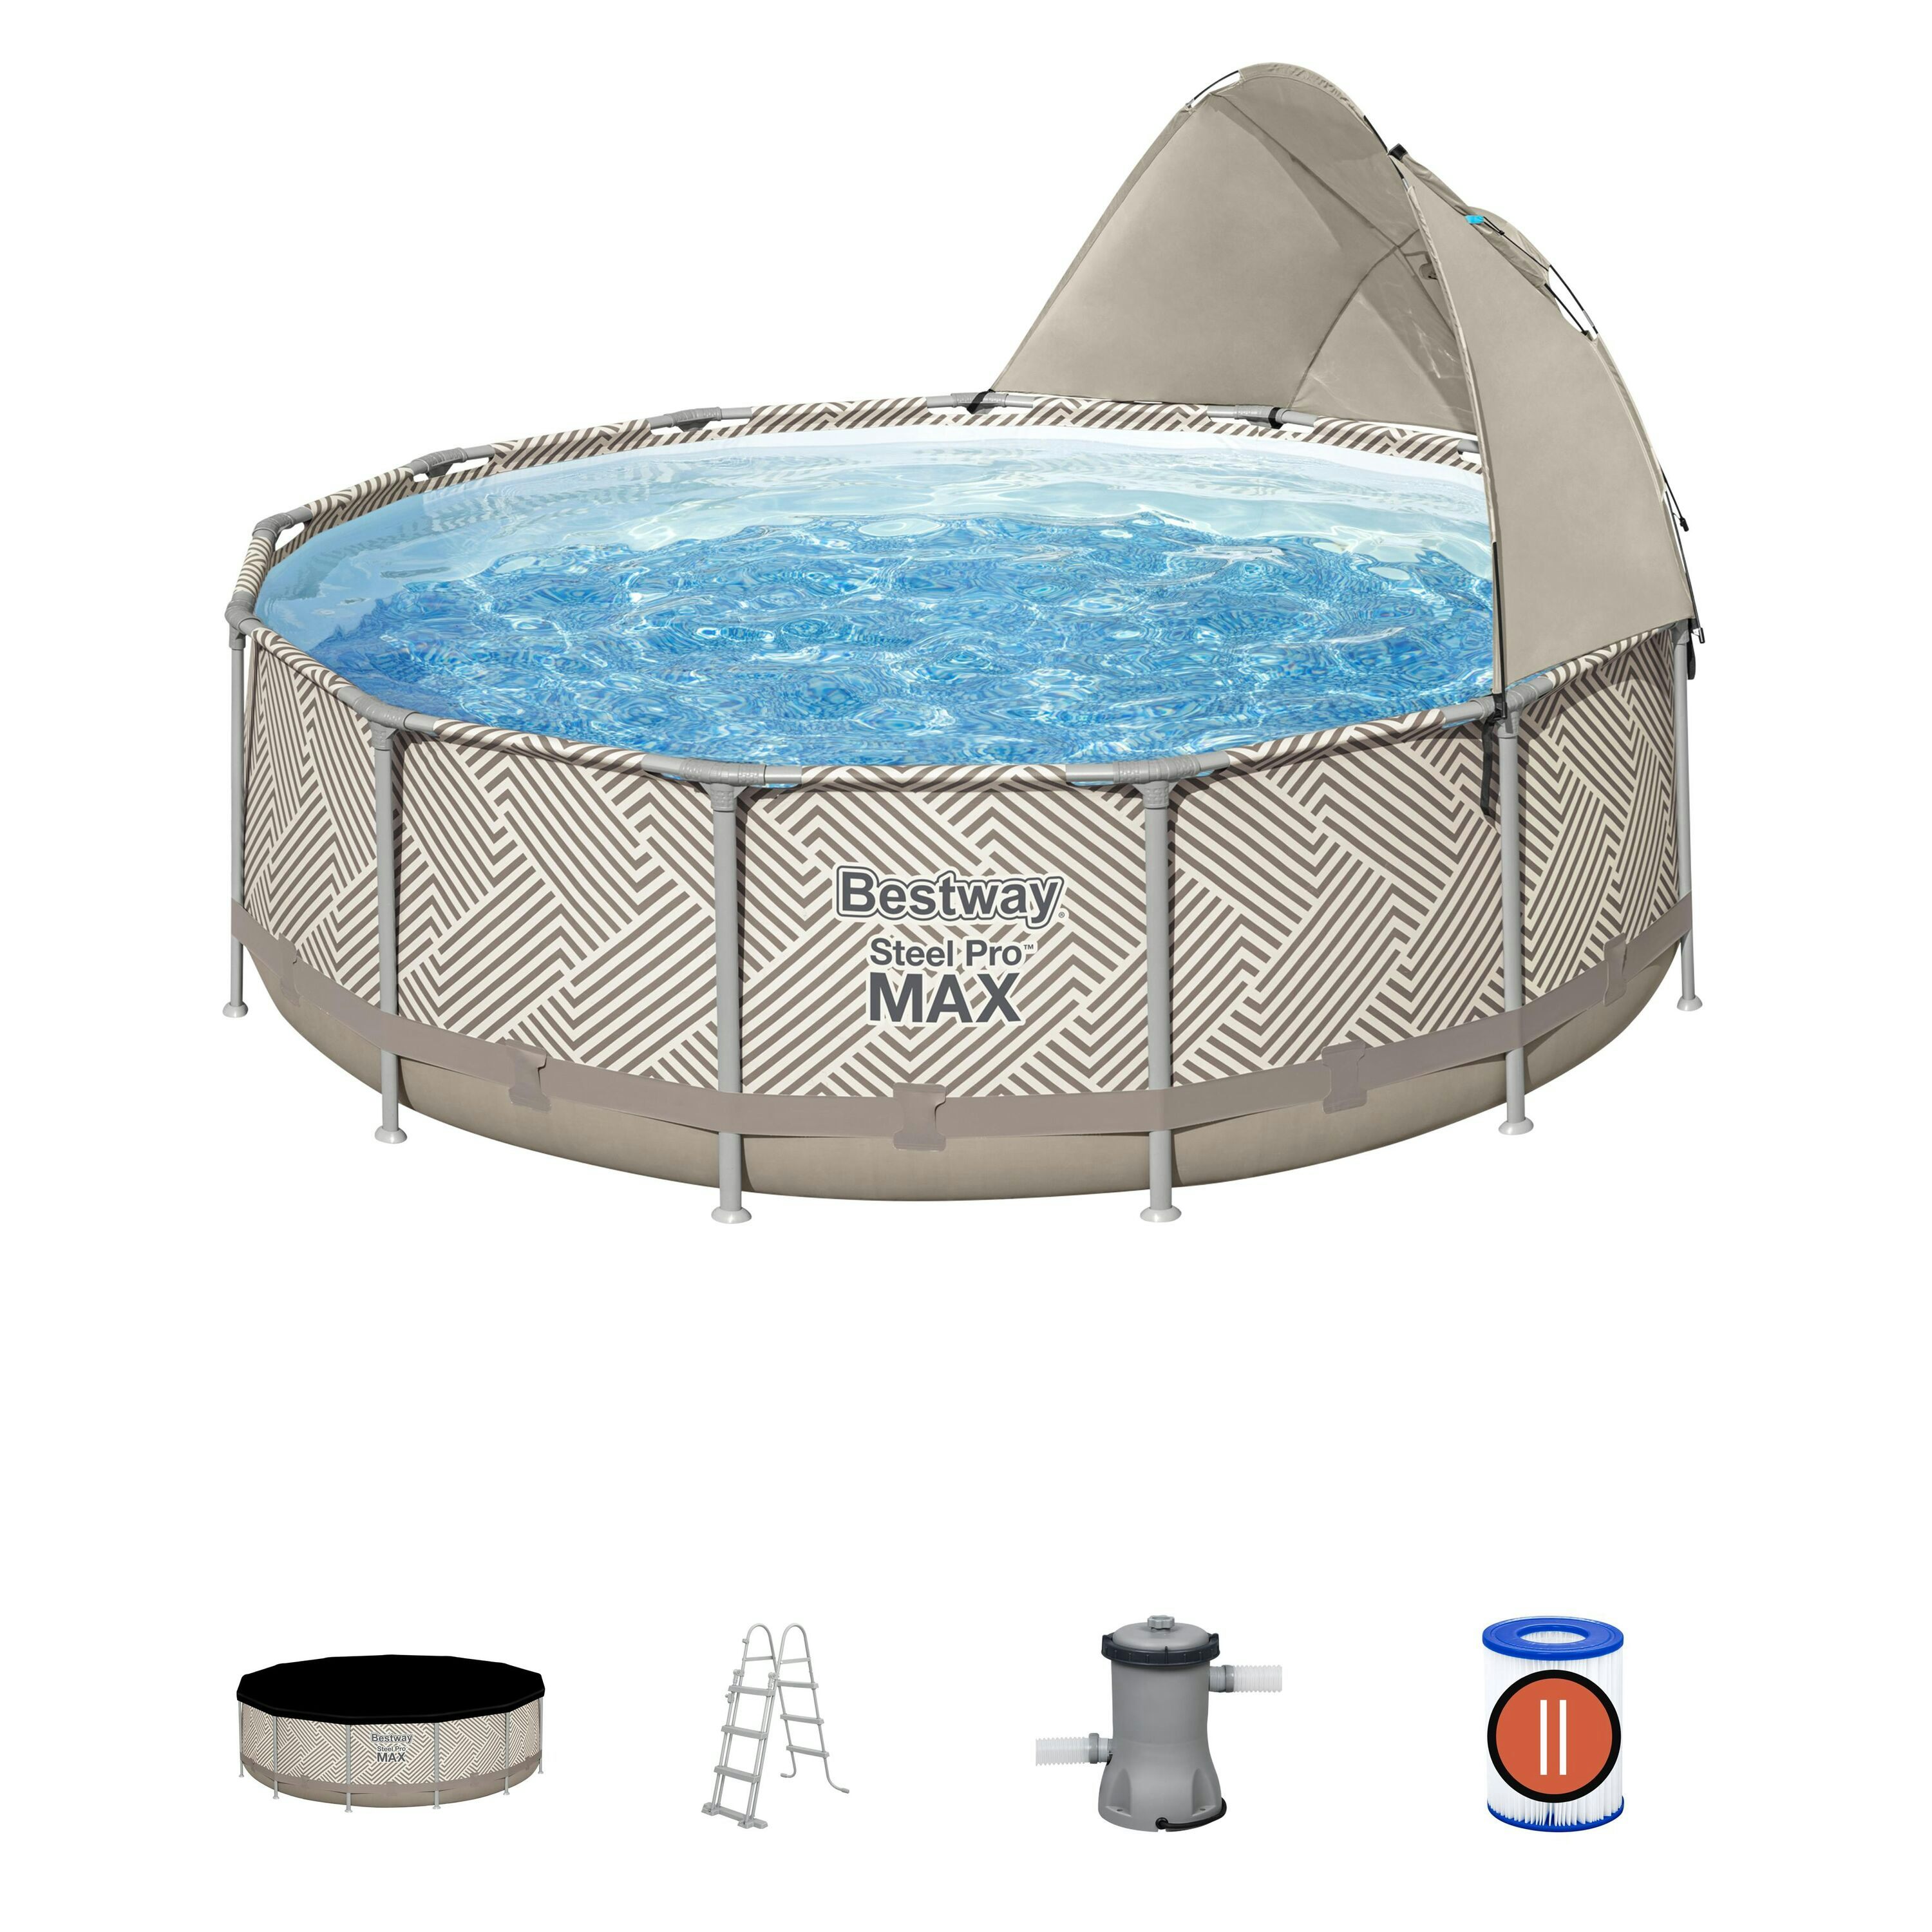 Bovengronds zwembad Steel Pro MAX bovengronds zwembad met zonnezeil van 396x107 cm Bestway 1